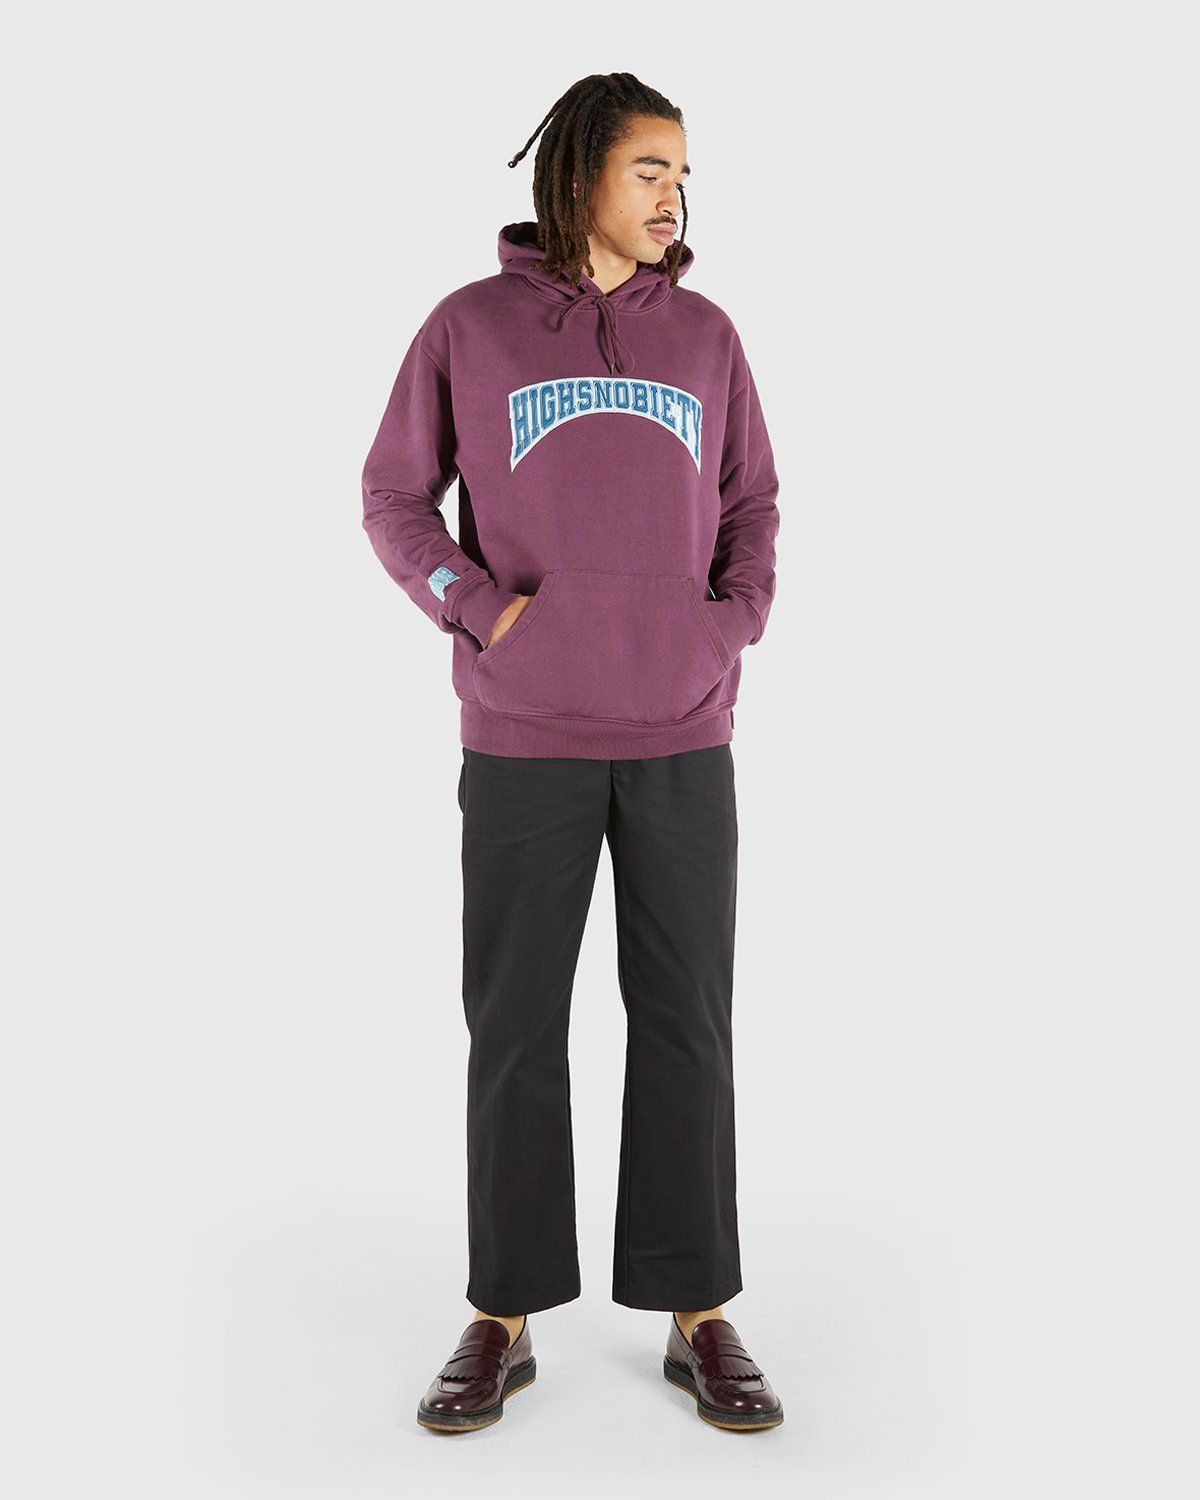 Highsnobiety – Collegiate Hoodie Purple - Hoodies - Purple - Image 6